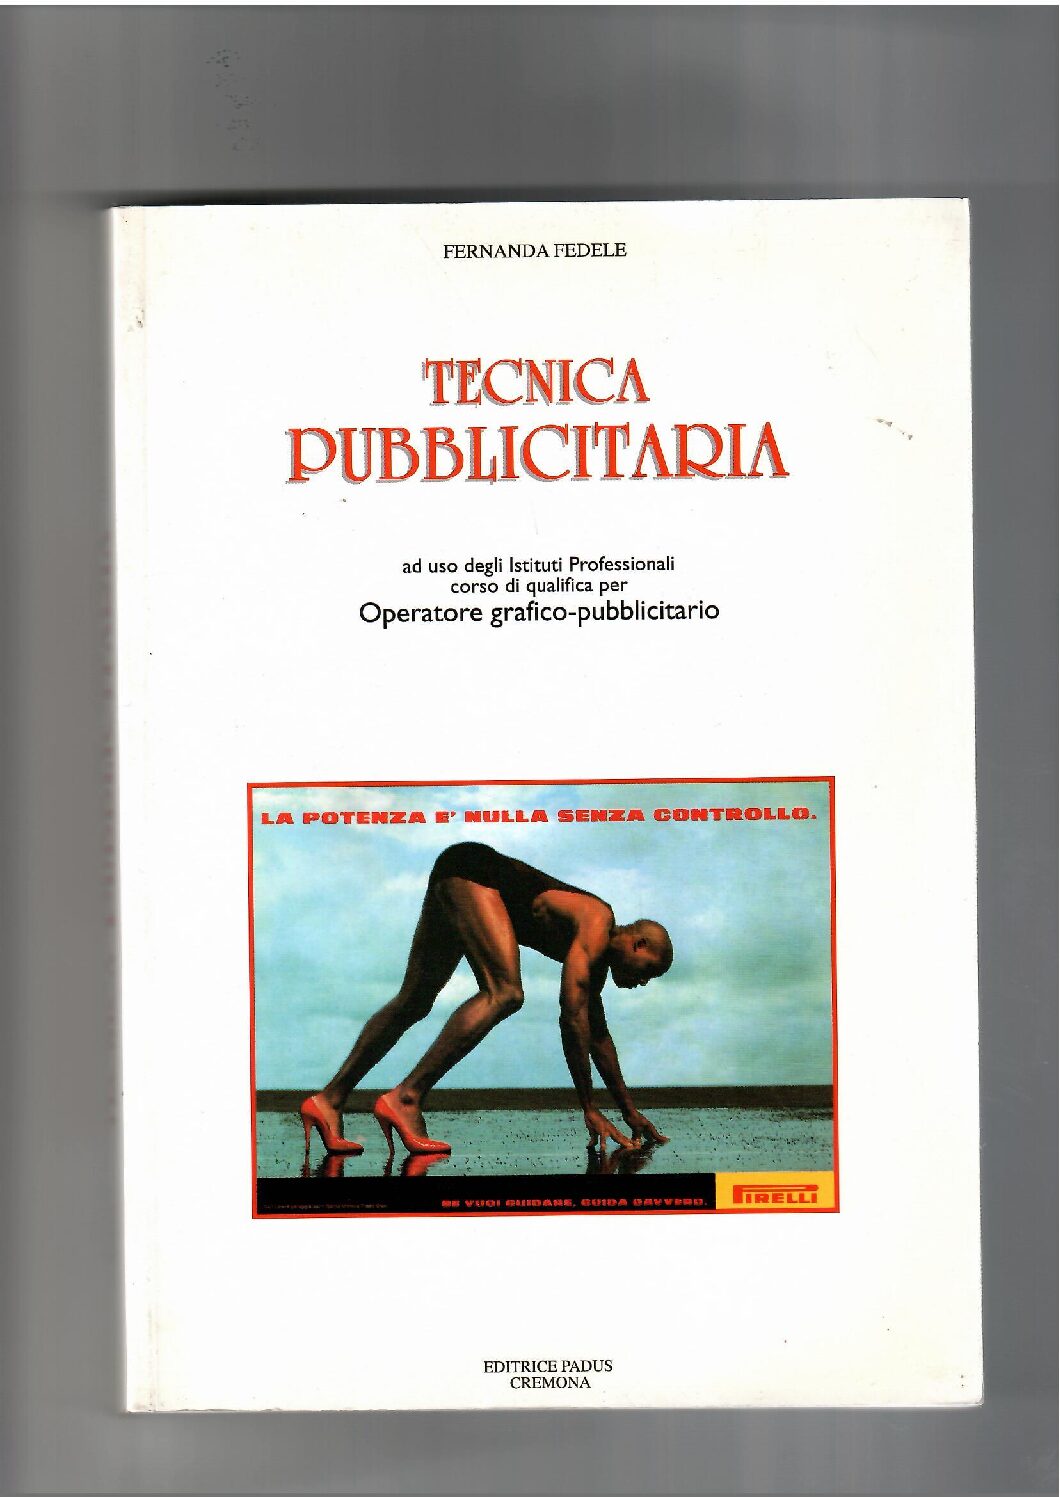 Copertina libro Tecnica Pubblicitaria (operatore grafico-pubblicitario)